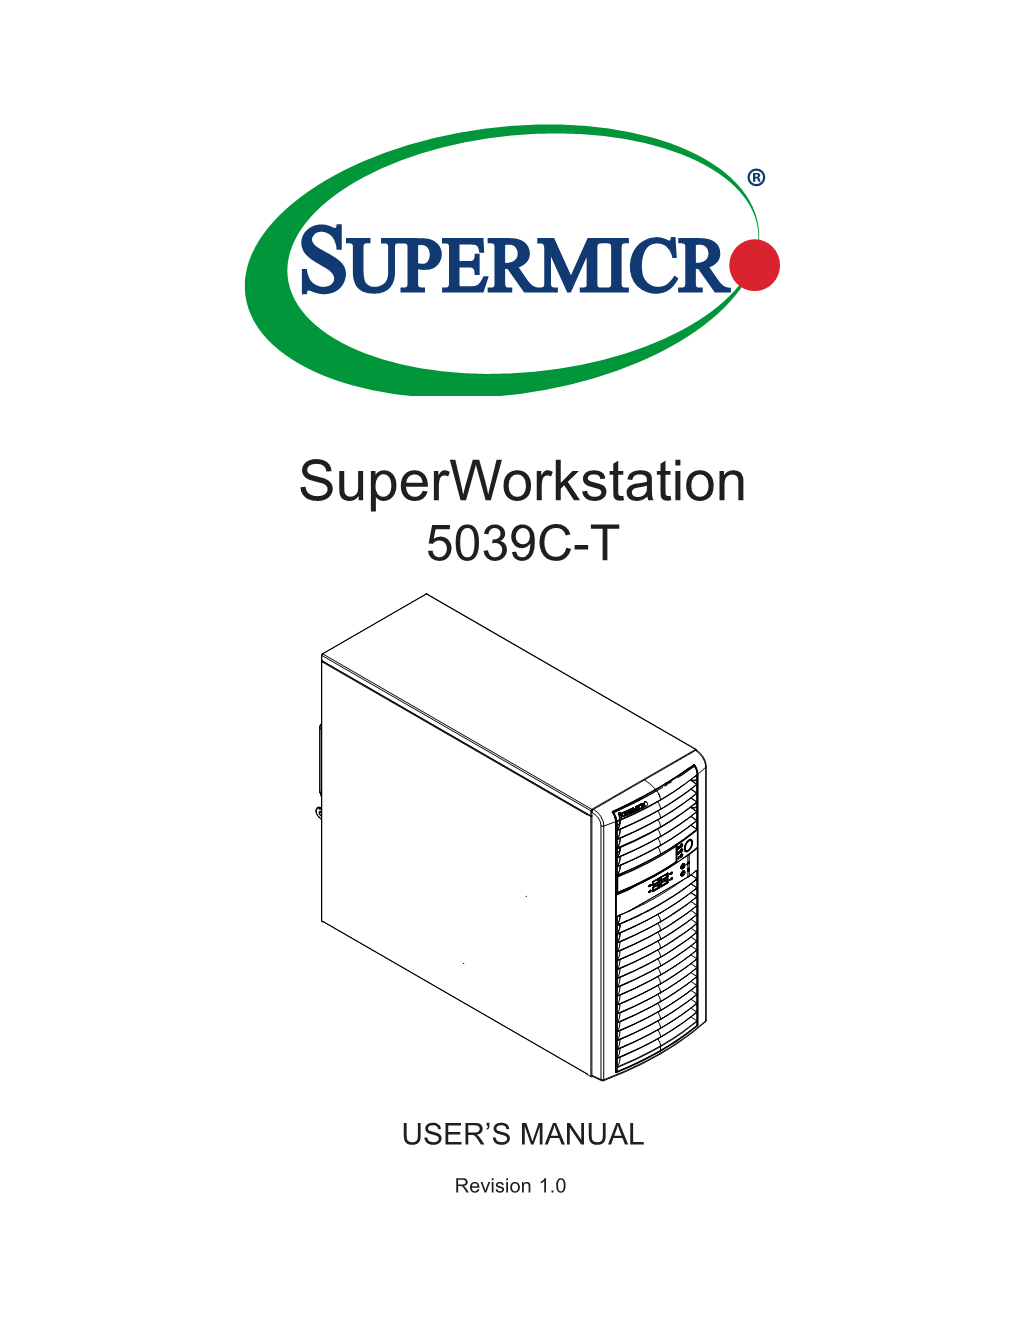 Superworkstation 5039C-T